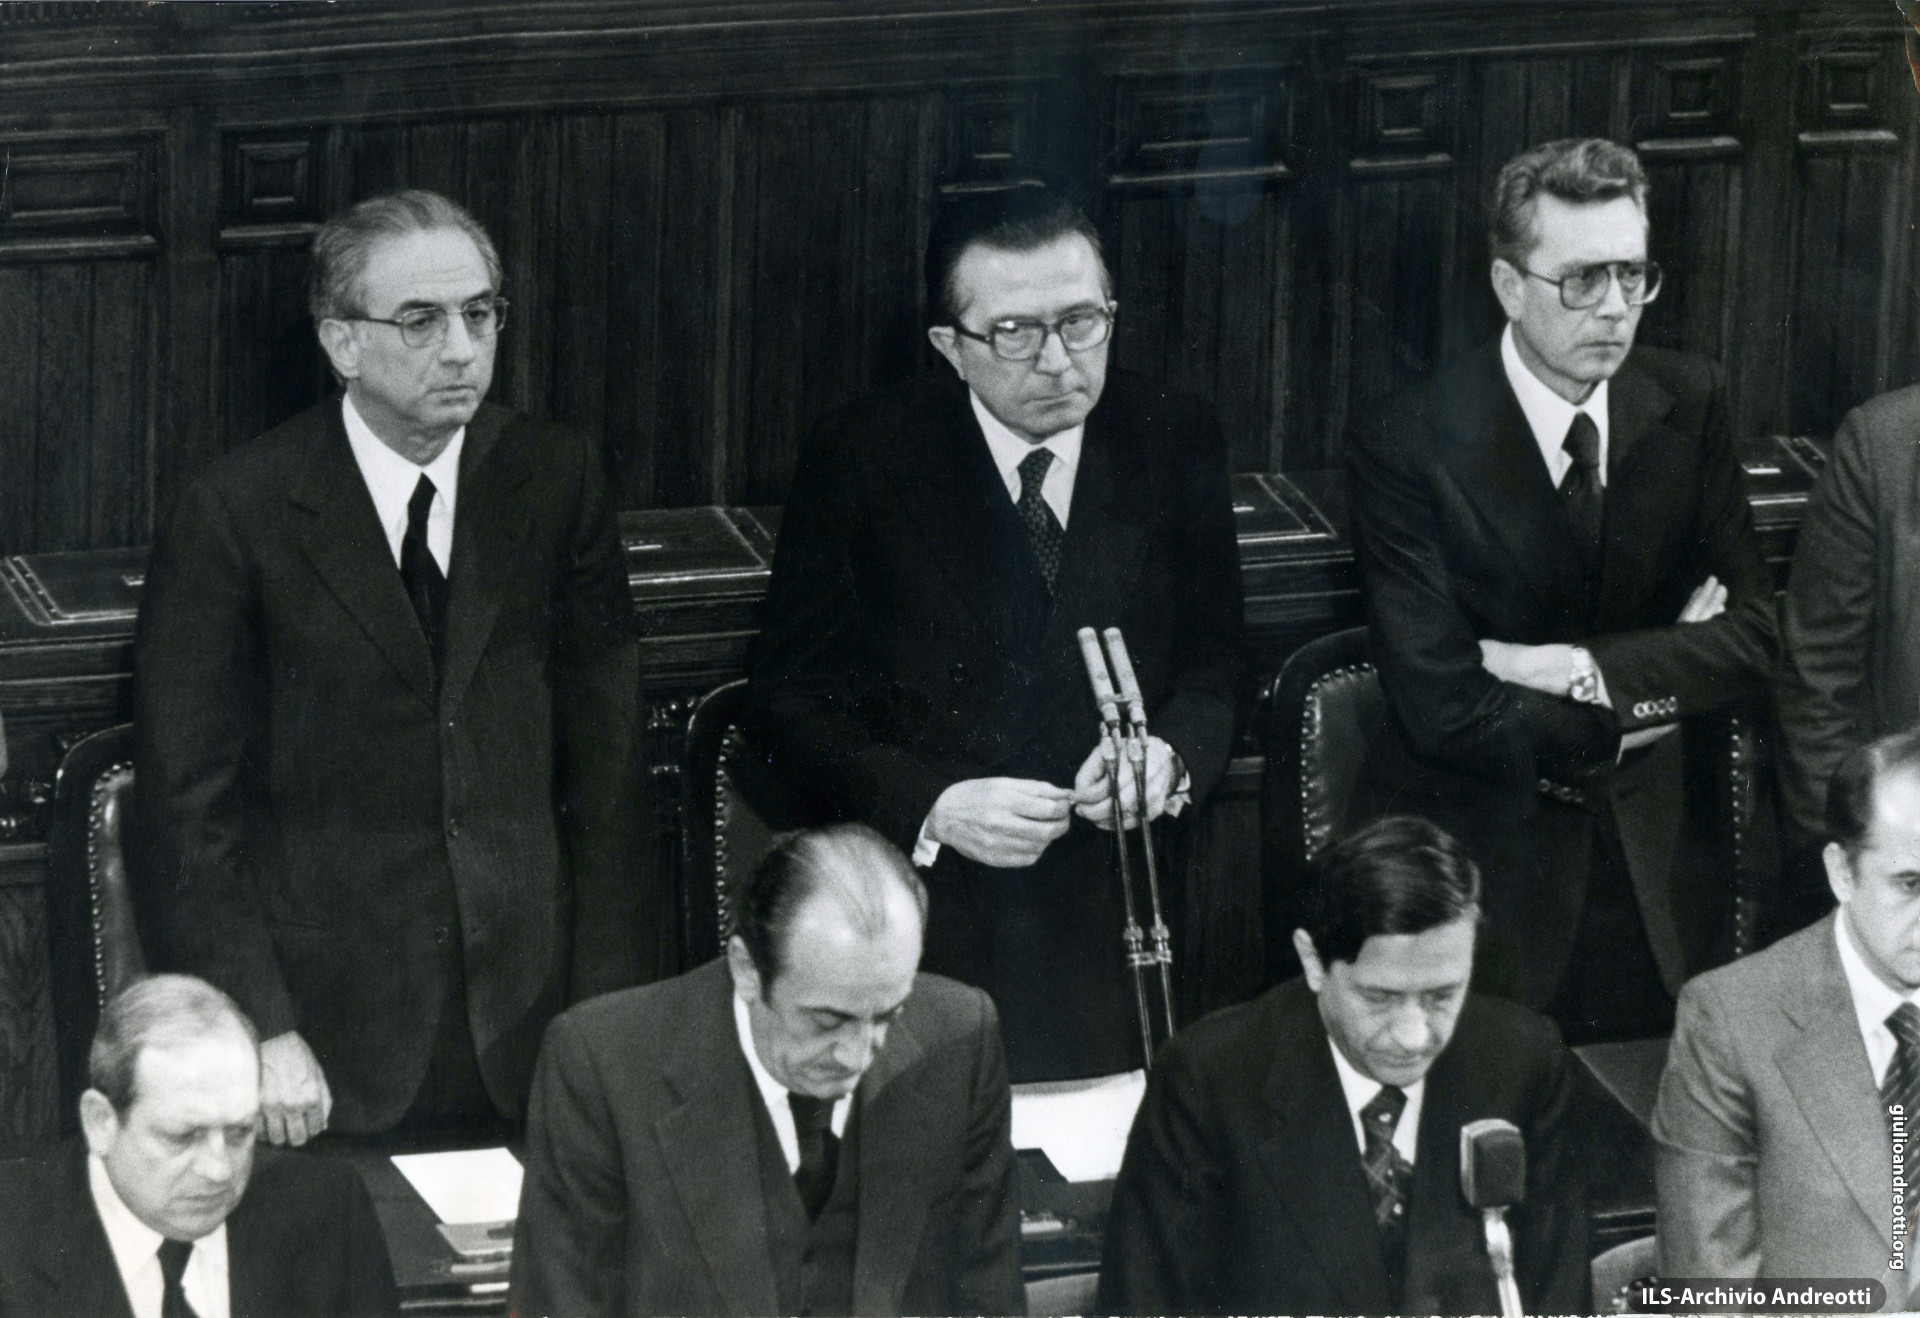 16 marzo 1978. Commemorazione di Aldo Moro alla Camera dei deputati. Accanto ad Andreotti Cossiga e Forlani.